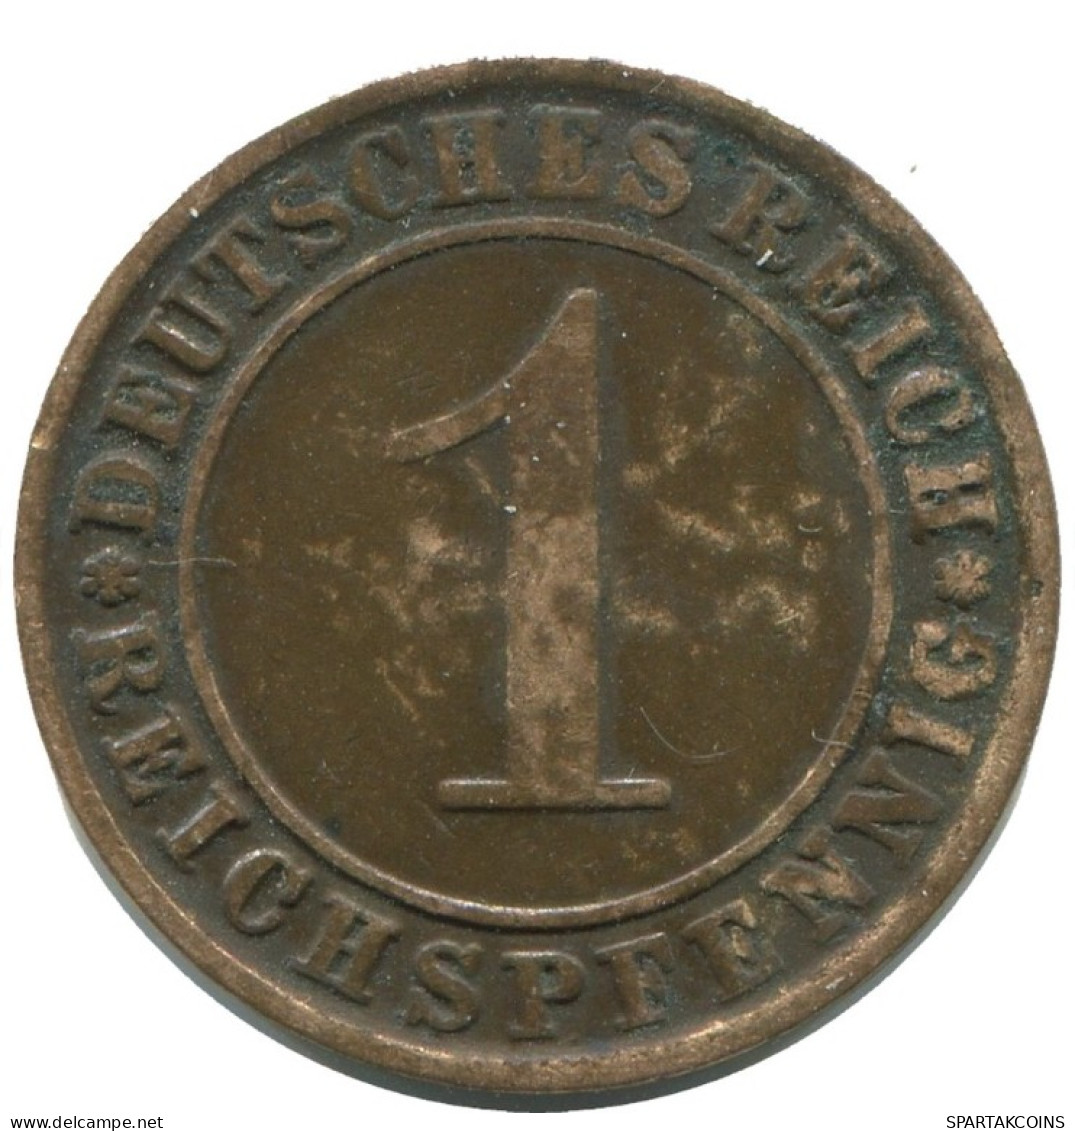 1 REICHSPFENNIG 1924 J ALEMANIA Moneda GERMANY #AD461.9.E.A - 1 Renten- & 1 Reichspfennig